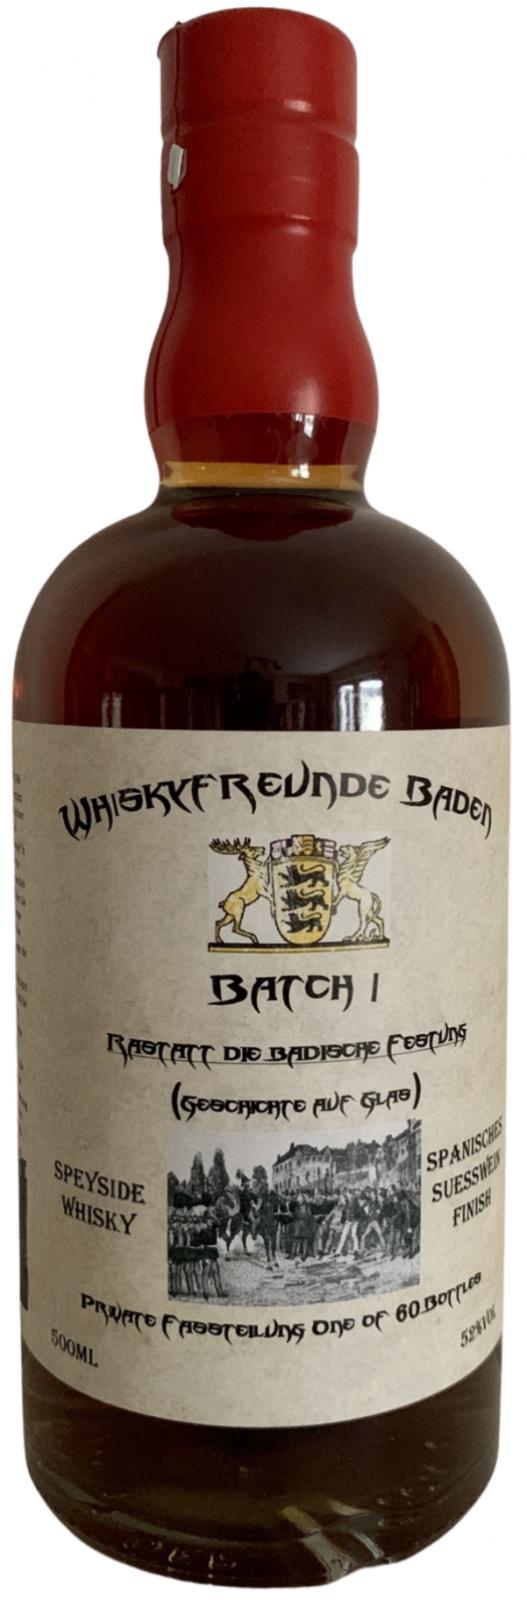 Whiskyfreunde Baden Batch 1